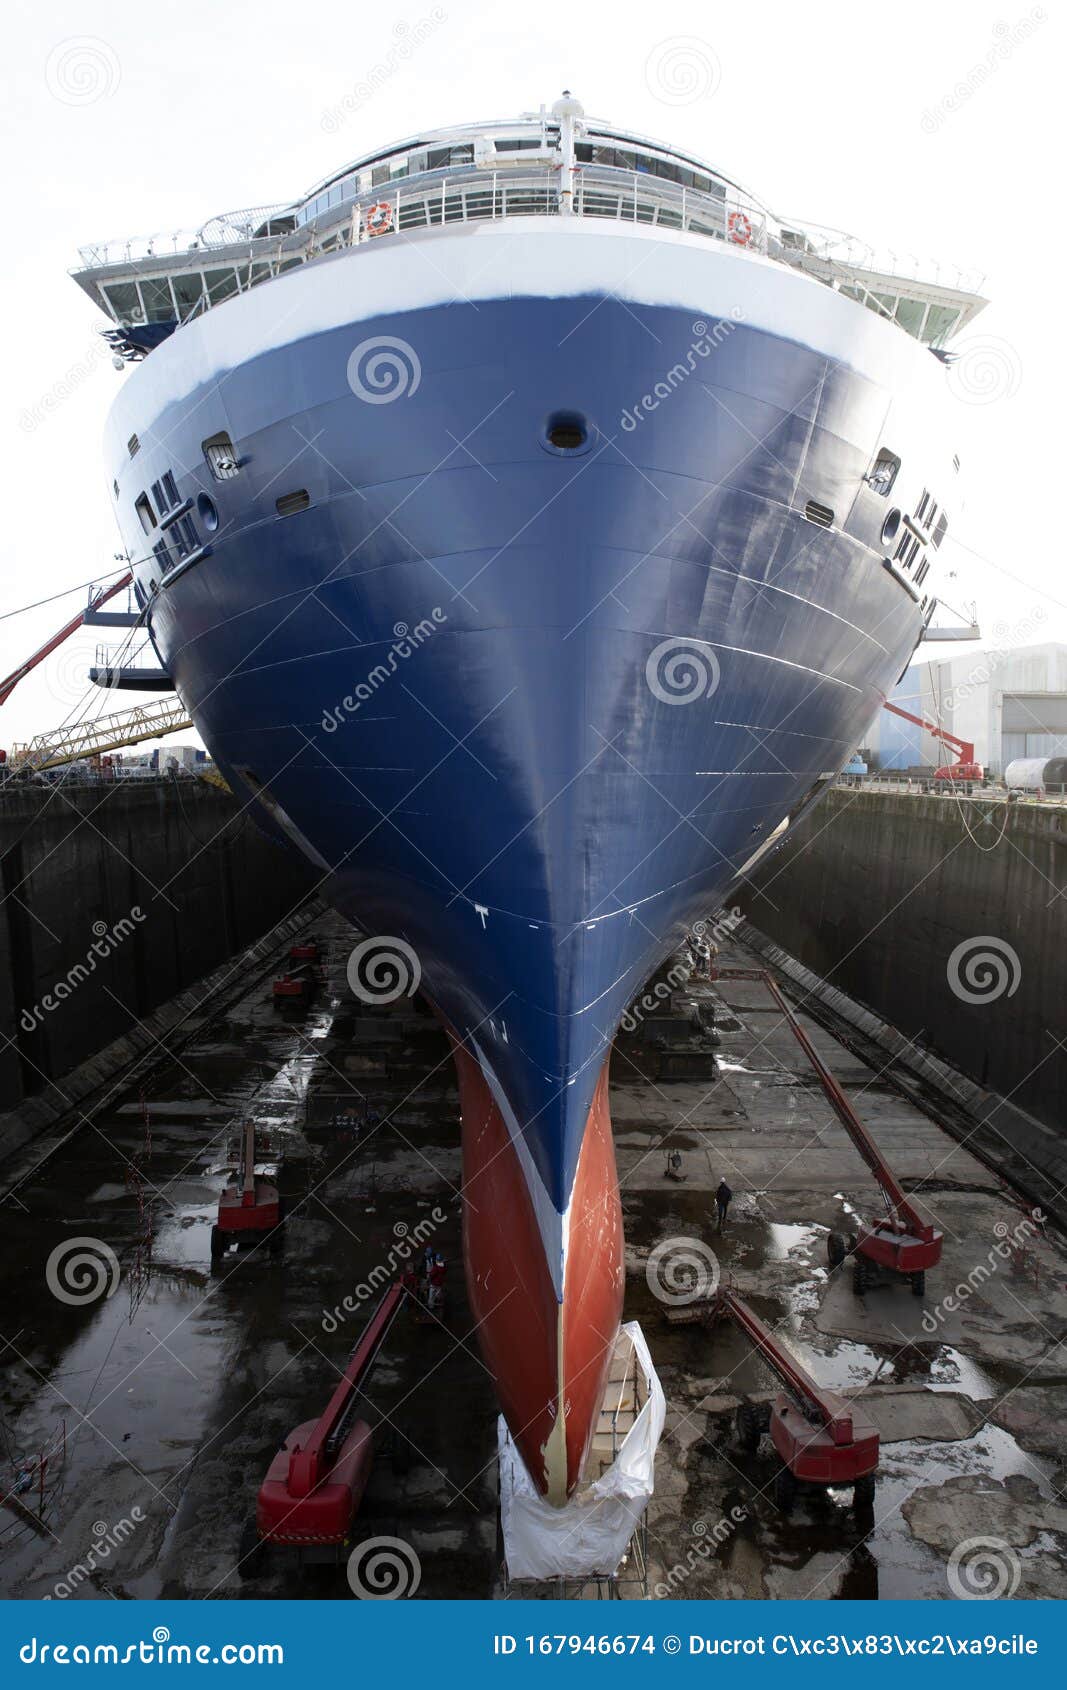 cruise ship repairs